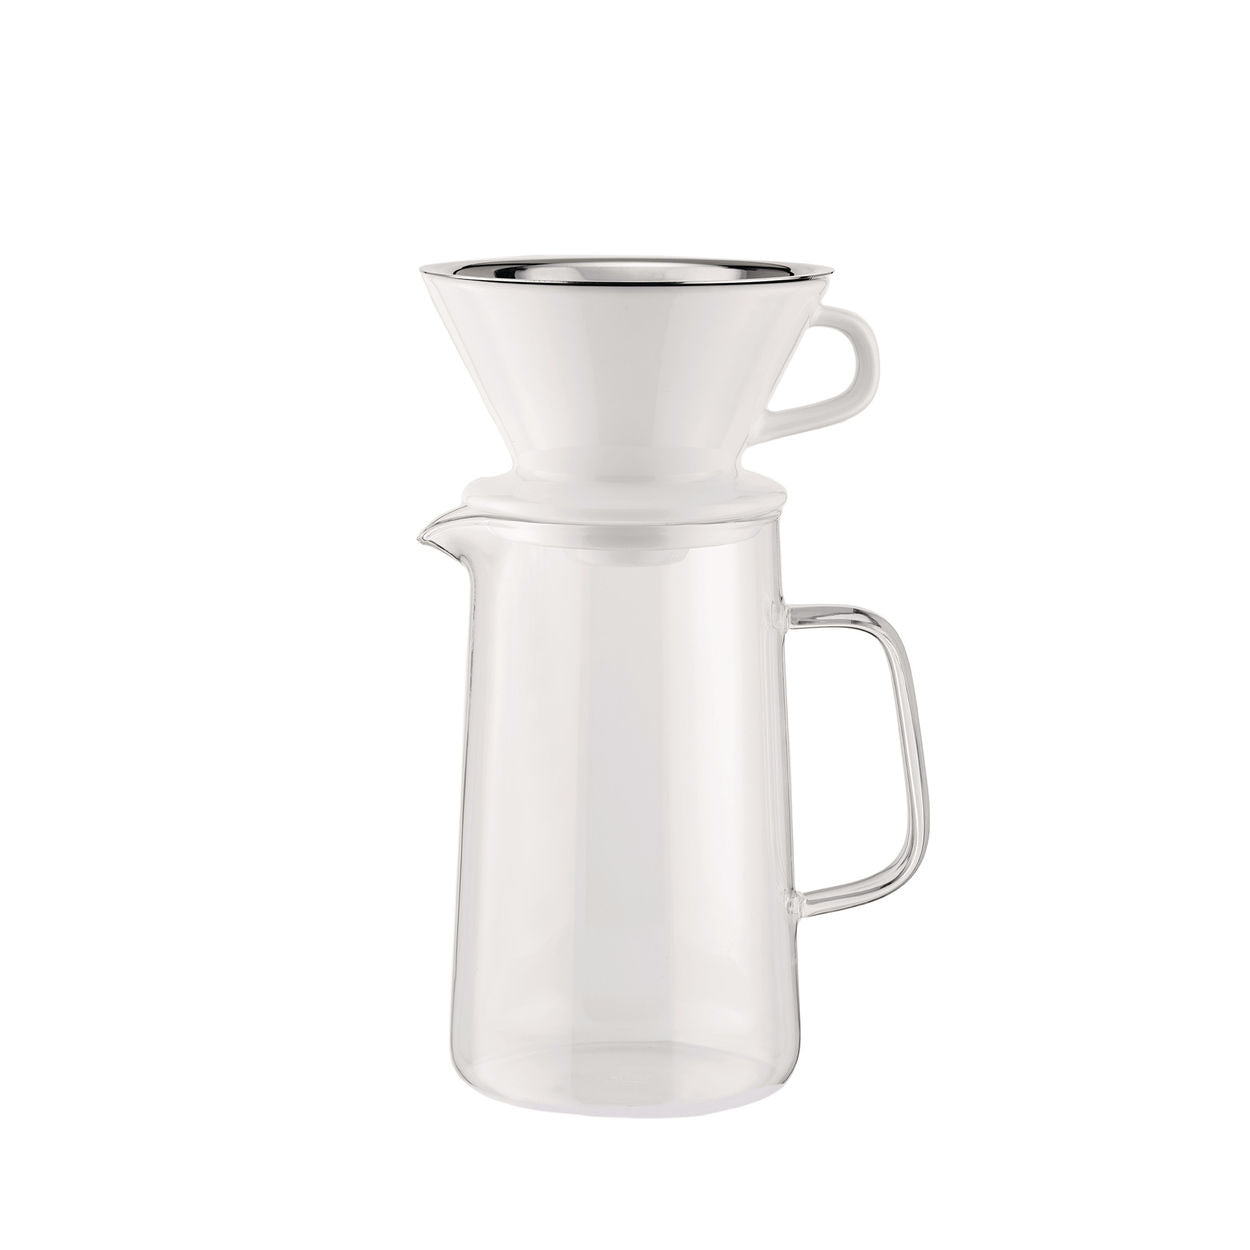 Alessi Langsamer Kaffee, Accessoires für Kaffeemühle (Krug + Nettofilter + Filterhalter)